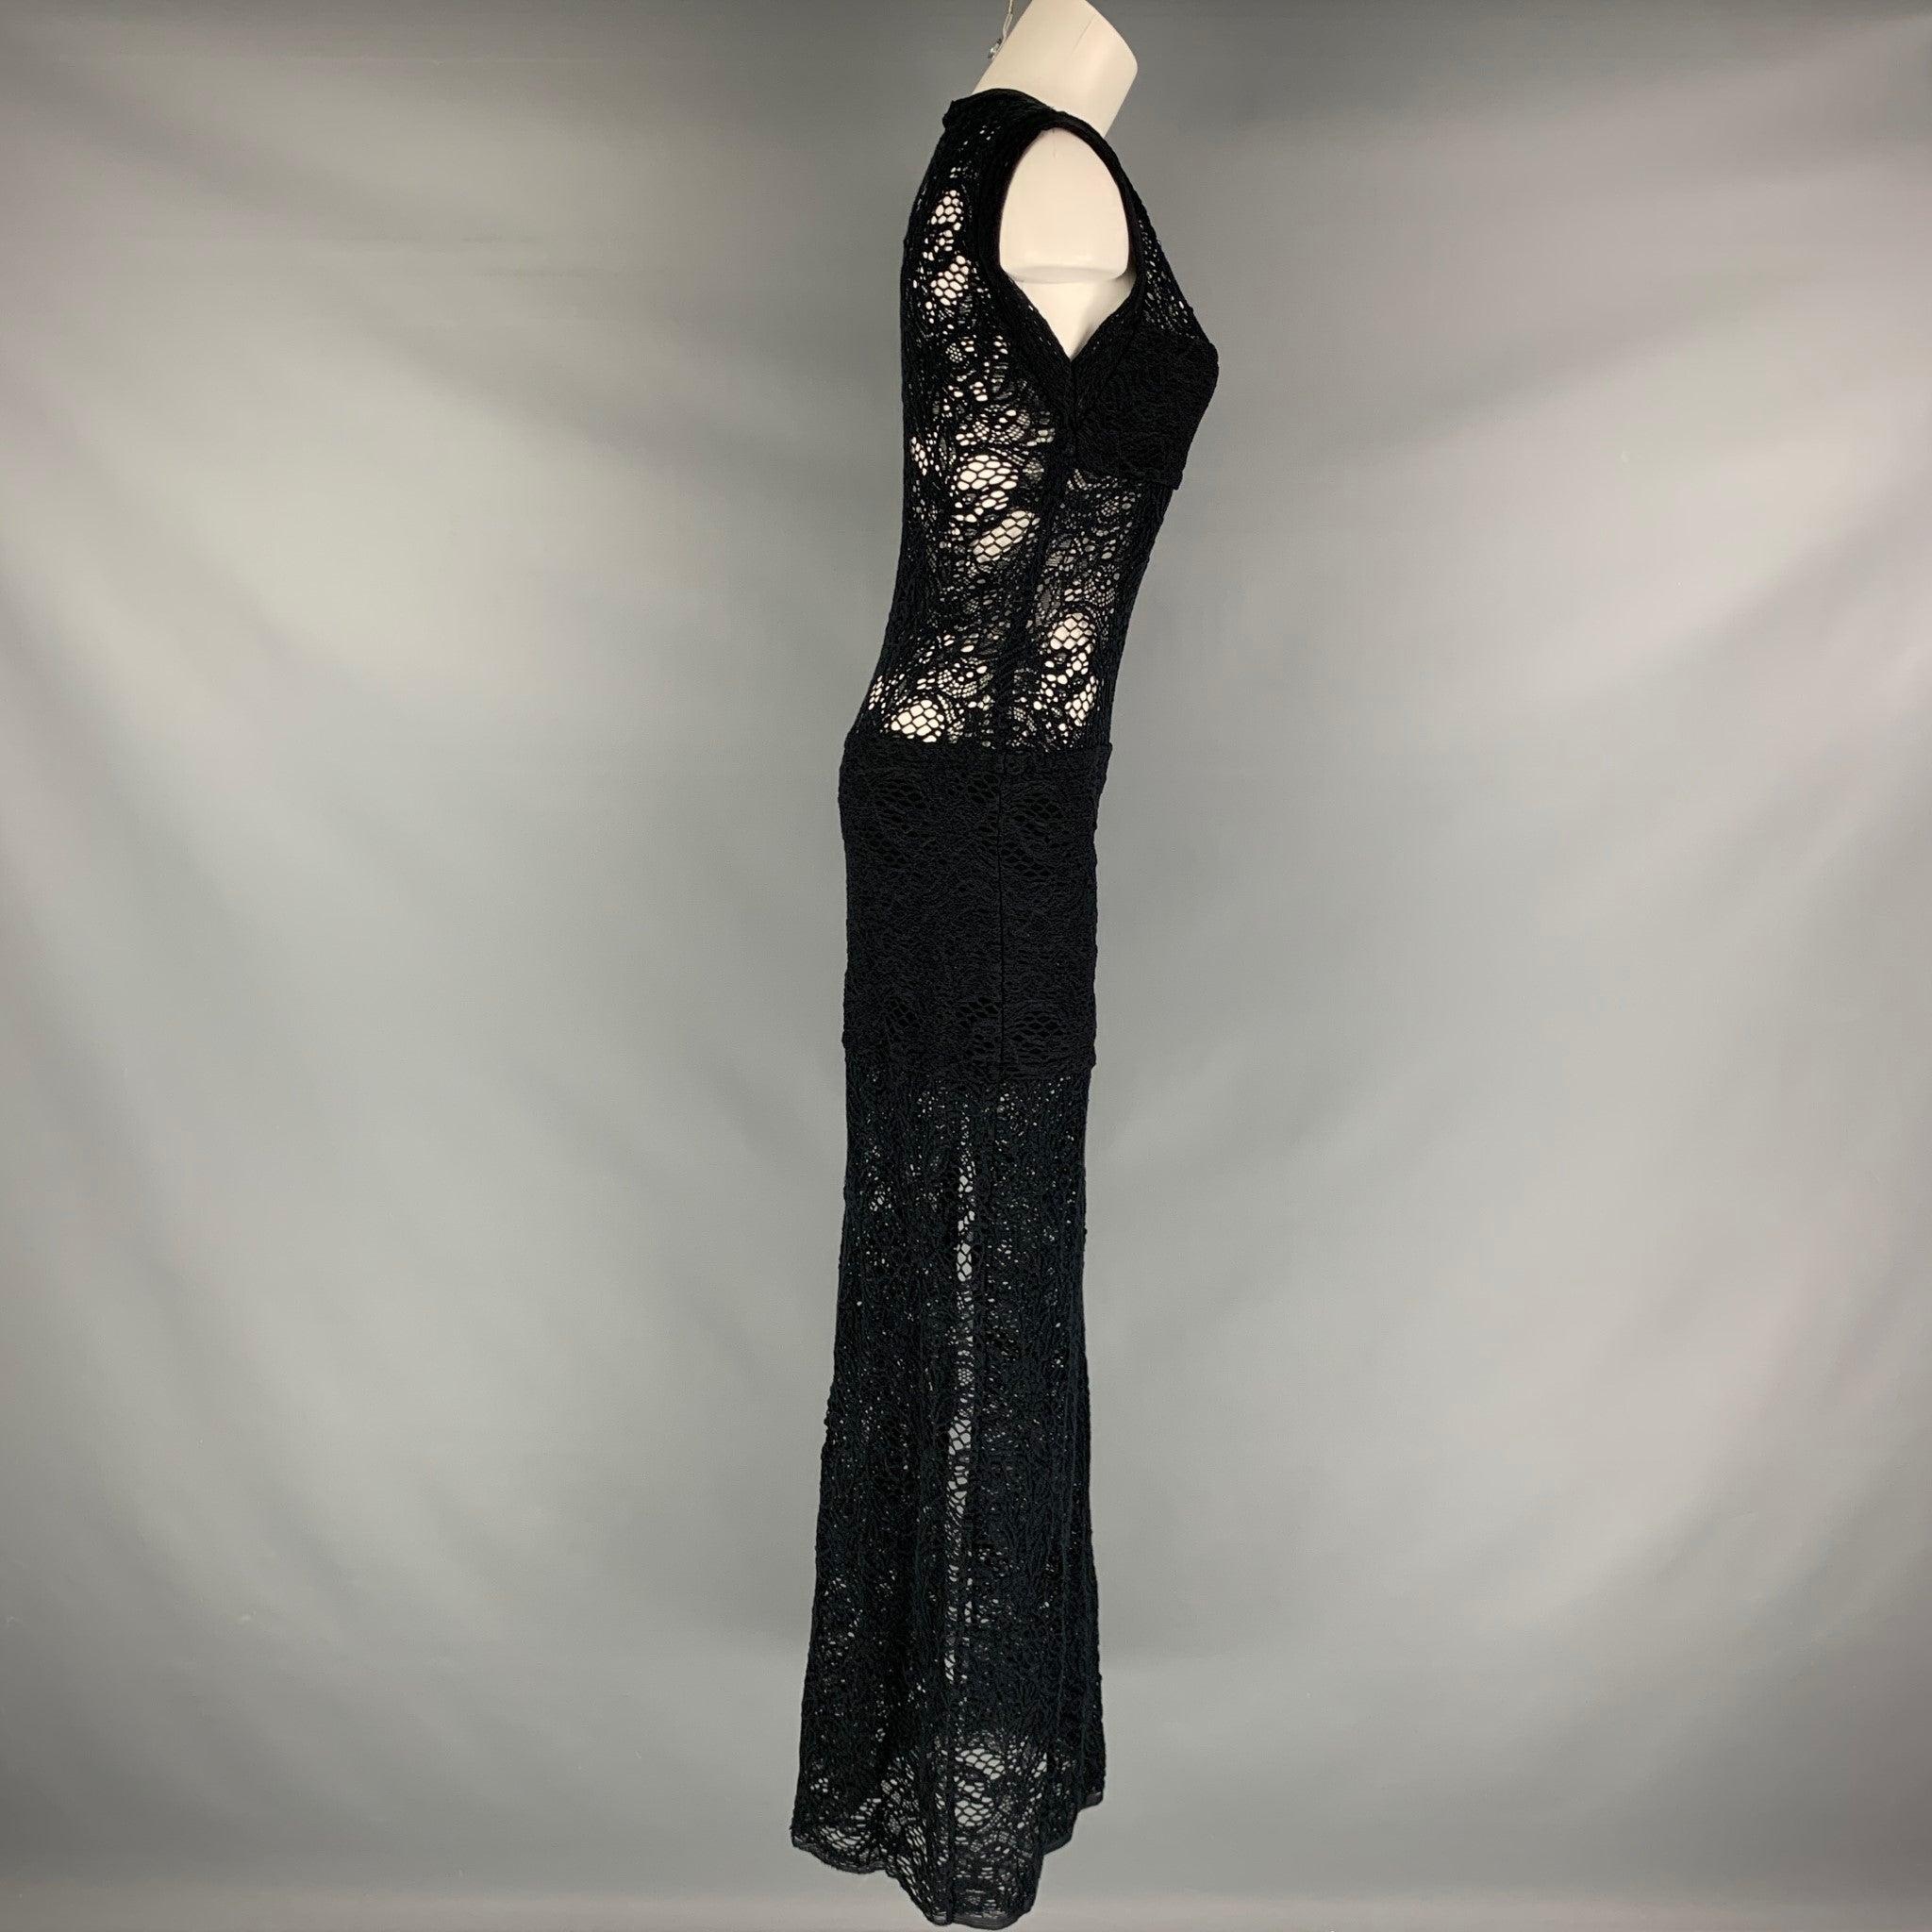 La robe longue IRO se compose d'une matière en tricot de coton mélangé noir, d'une robe droite sans manches, d'une fente sur le côté et d'une texture en dentelle. Très bon état d'origine. 

Marqué :  40 

Mesures : 
 
Épaule : 15 pouces Buste : 33